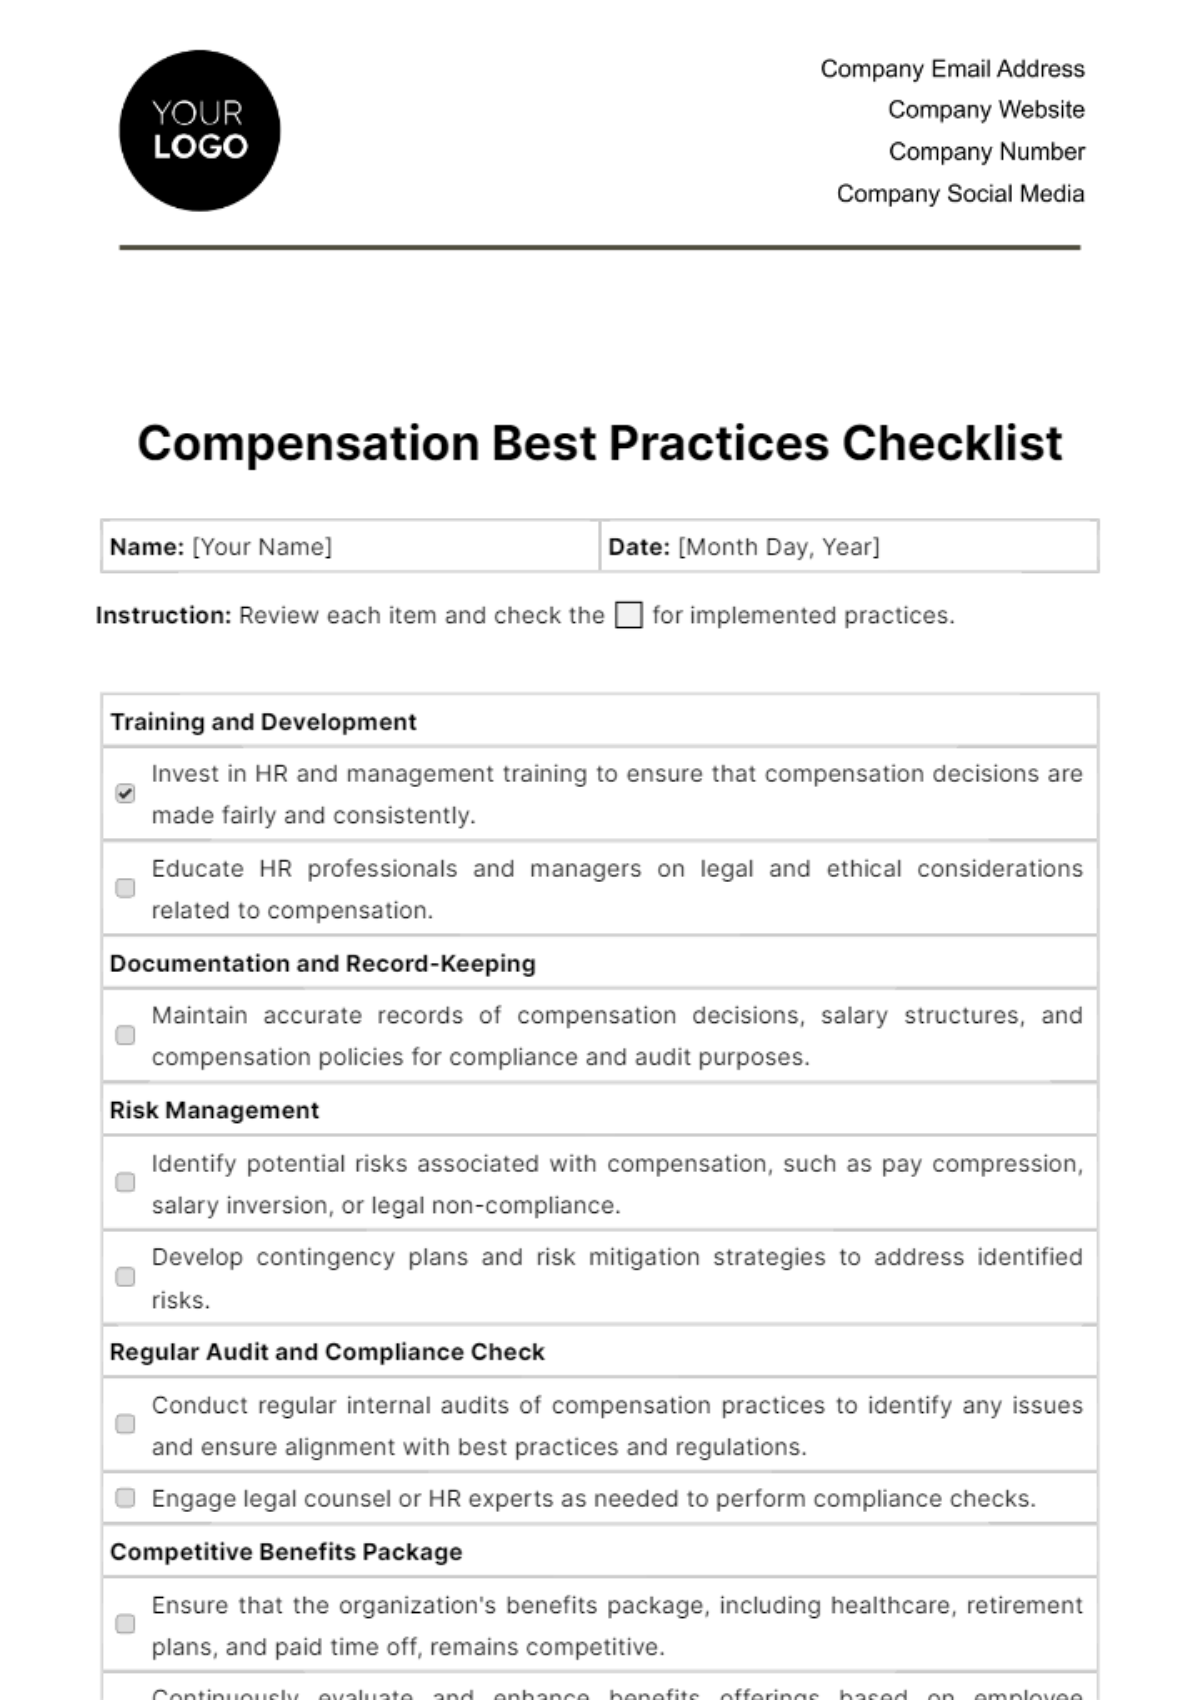 Free Compensation Best Practices Checklist HR Template